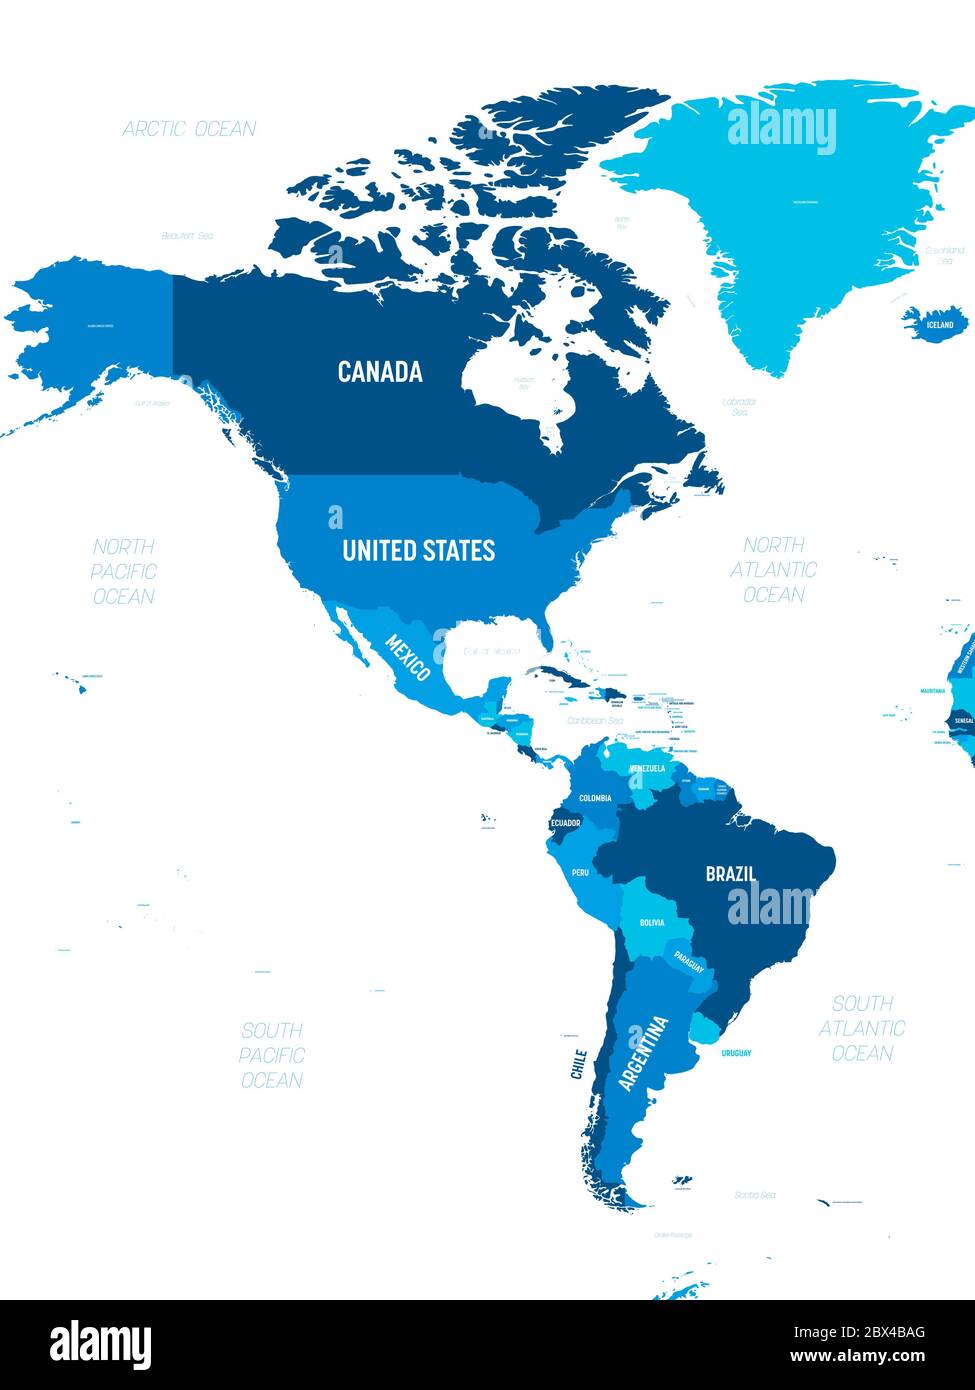 Mapa de América - tono verde coloreado sobre fondo oscuro. Mapa político de  alta detalle del continente de América del Norte y del Sur con el  etiquetado de nombres de países, capitales,